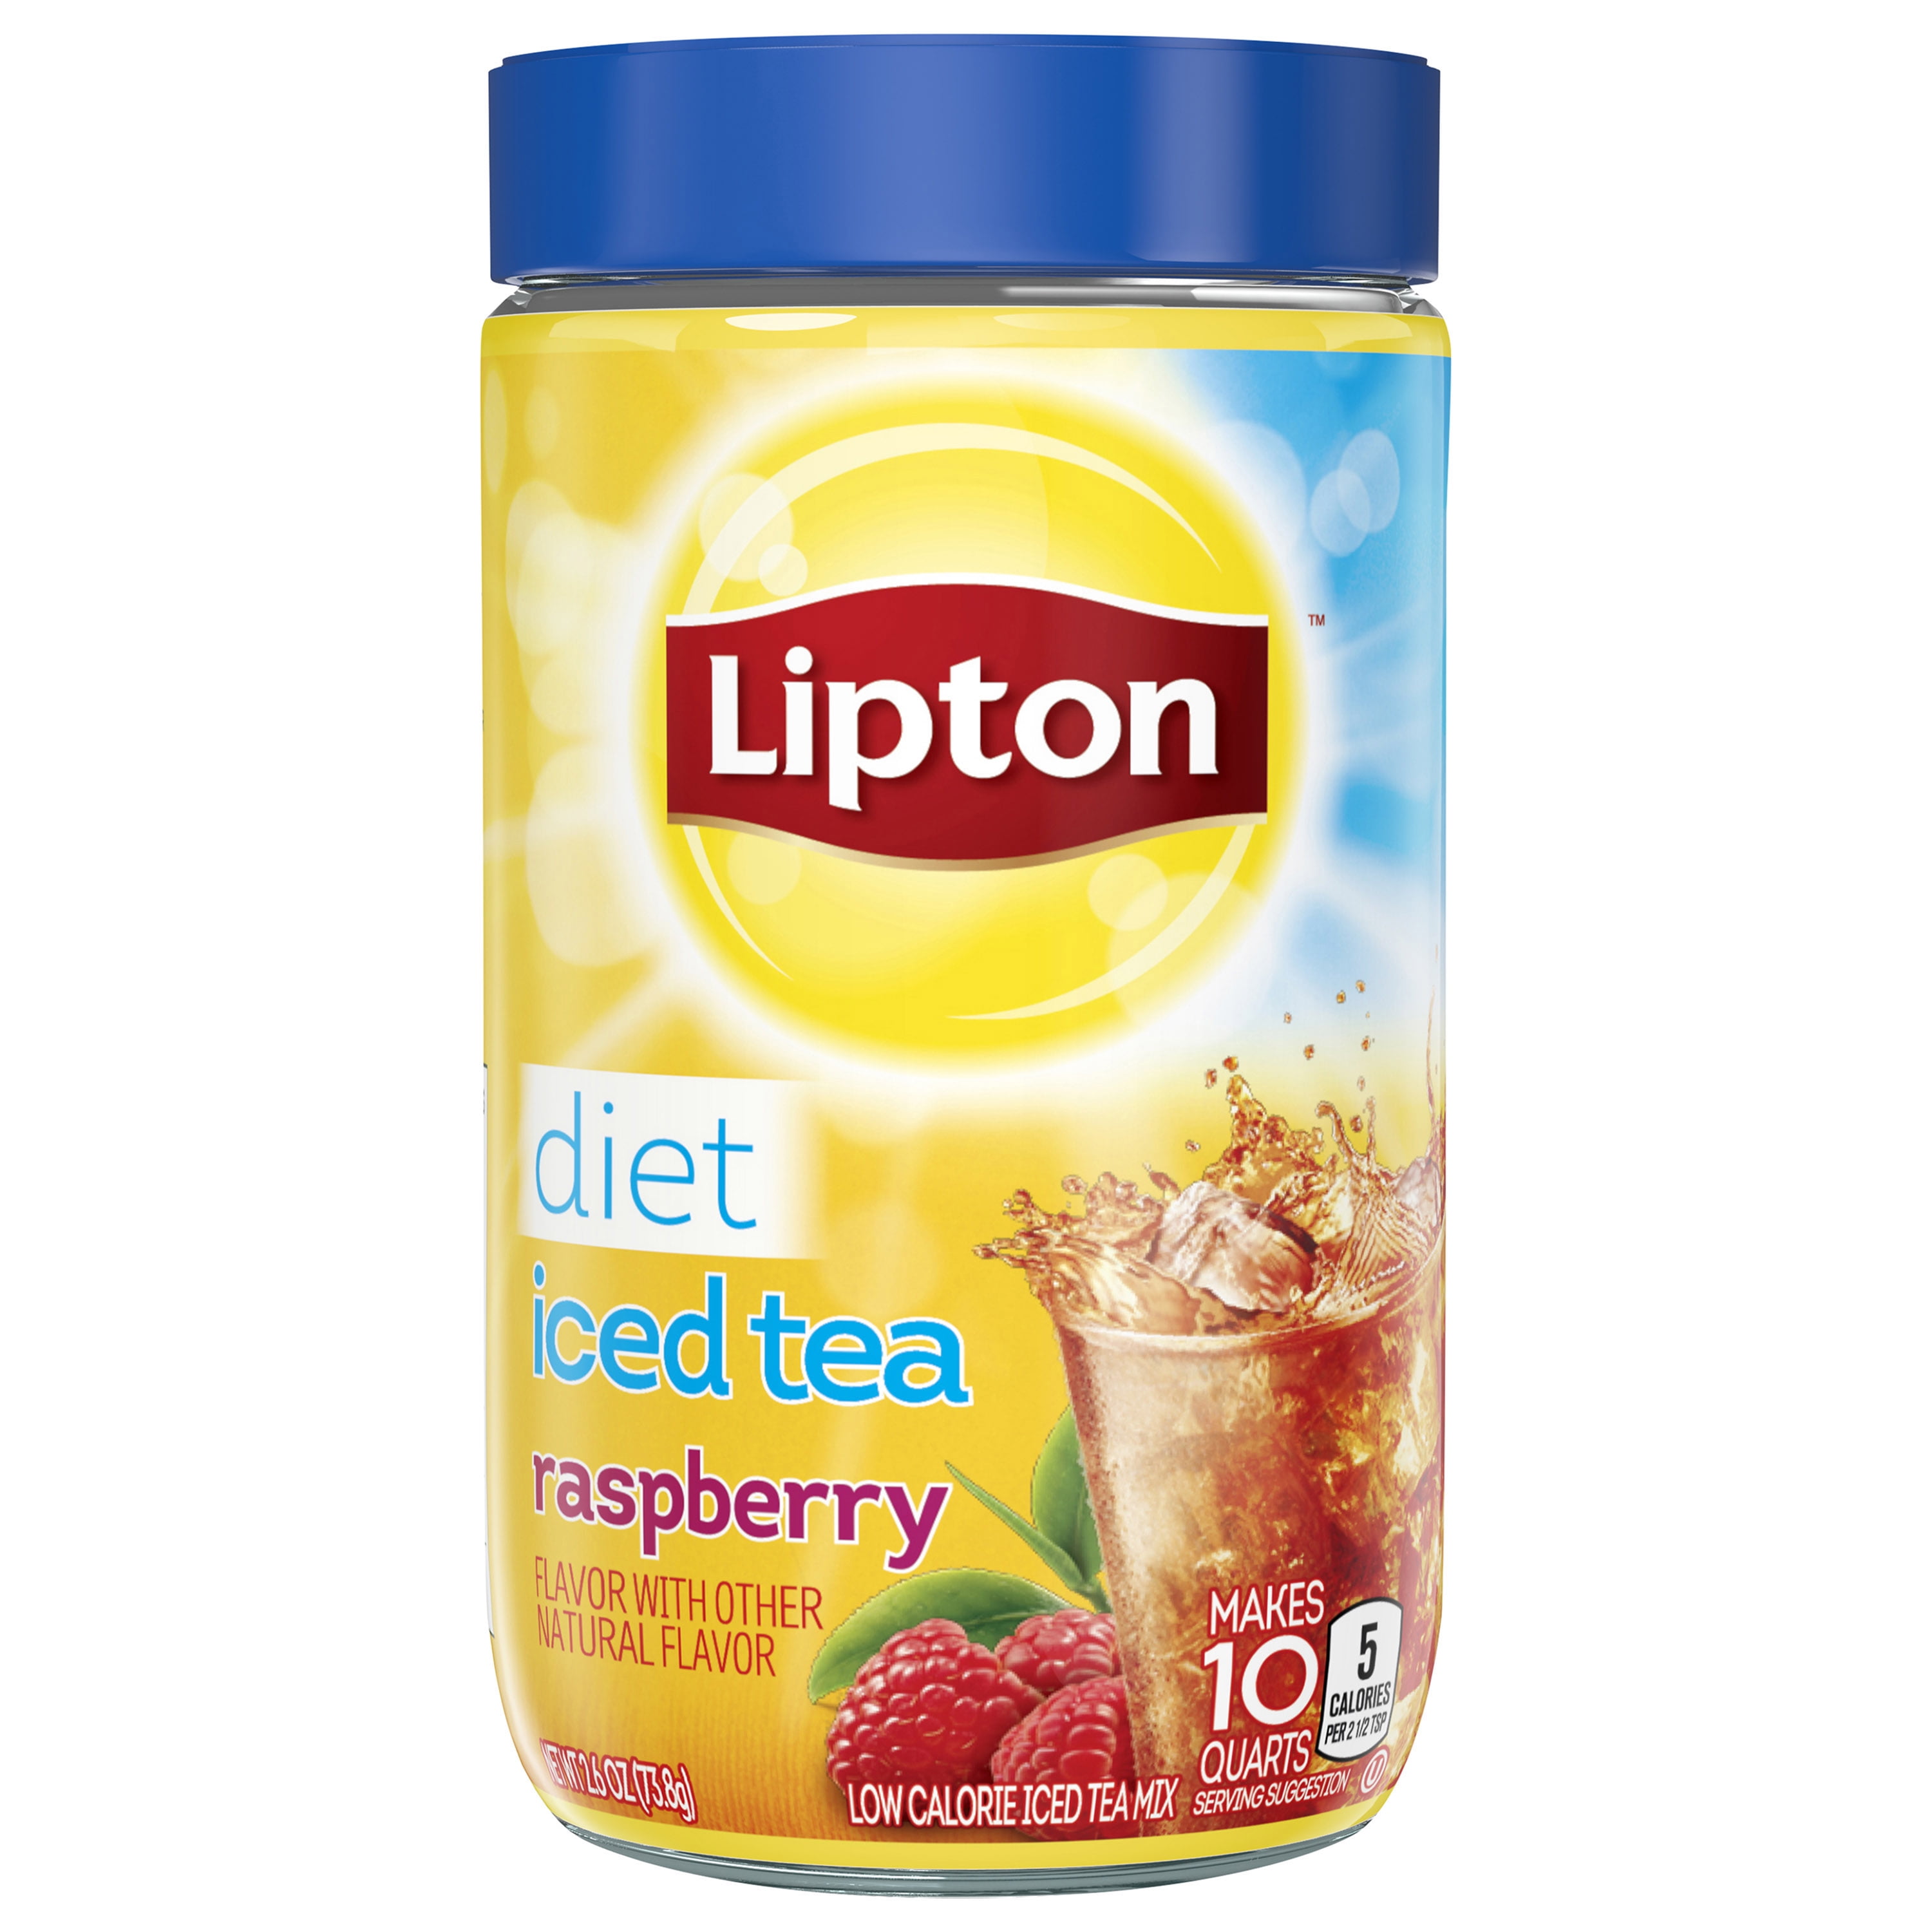 Растворимый чай в гранулах. Lipton Ice Tea растворимый. Сухой чай в гранулах Липтон. Липтон холодный чай растворимый. Чай растворимый в гранулах Липтон.